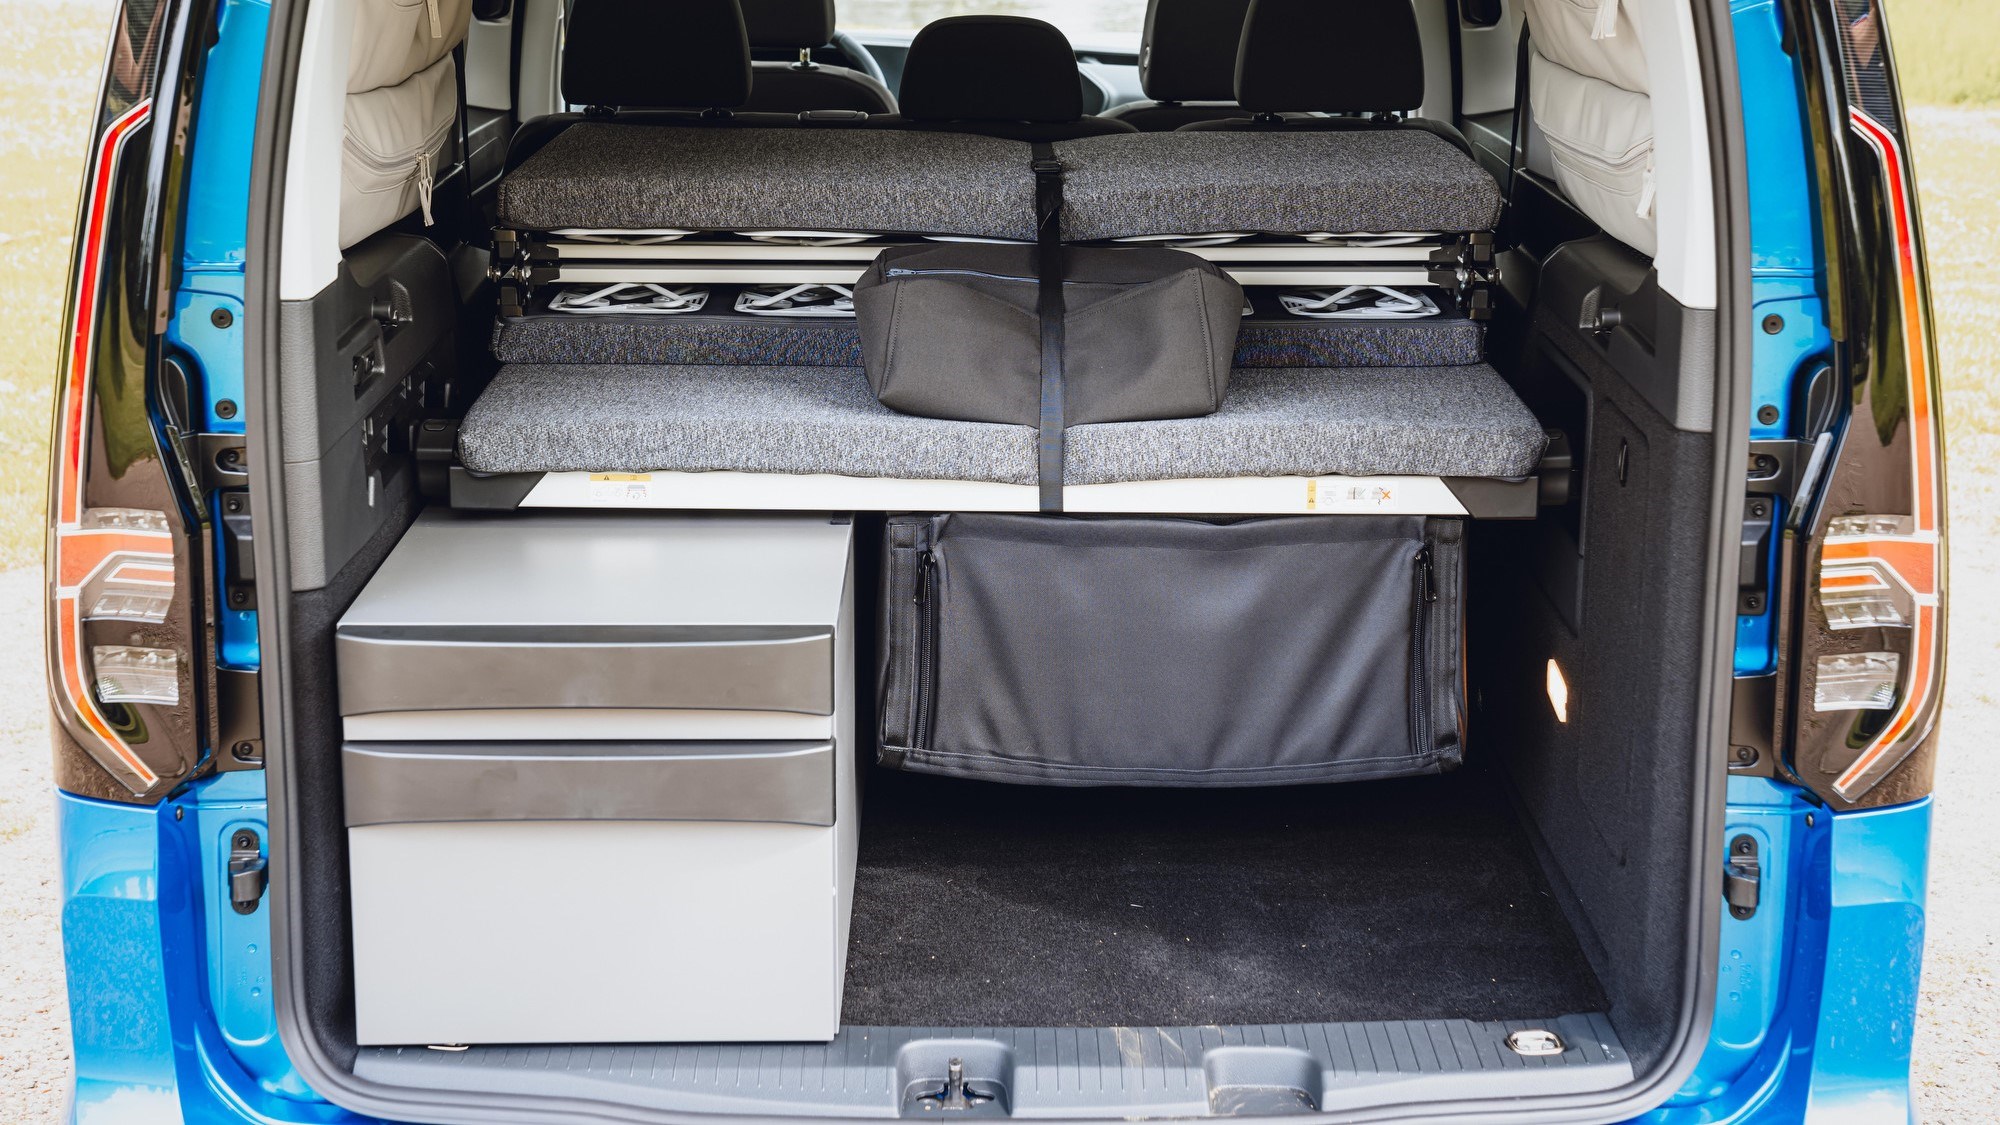 Living big in a tiny van: We drive Volkswagen's new Caddy